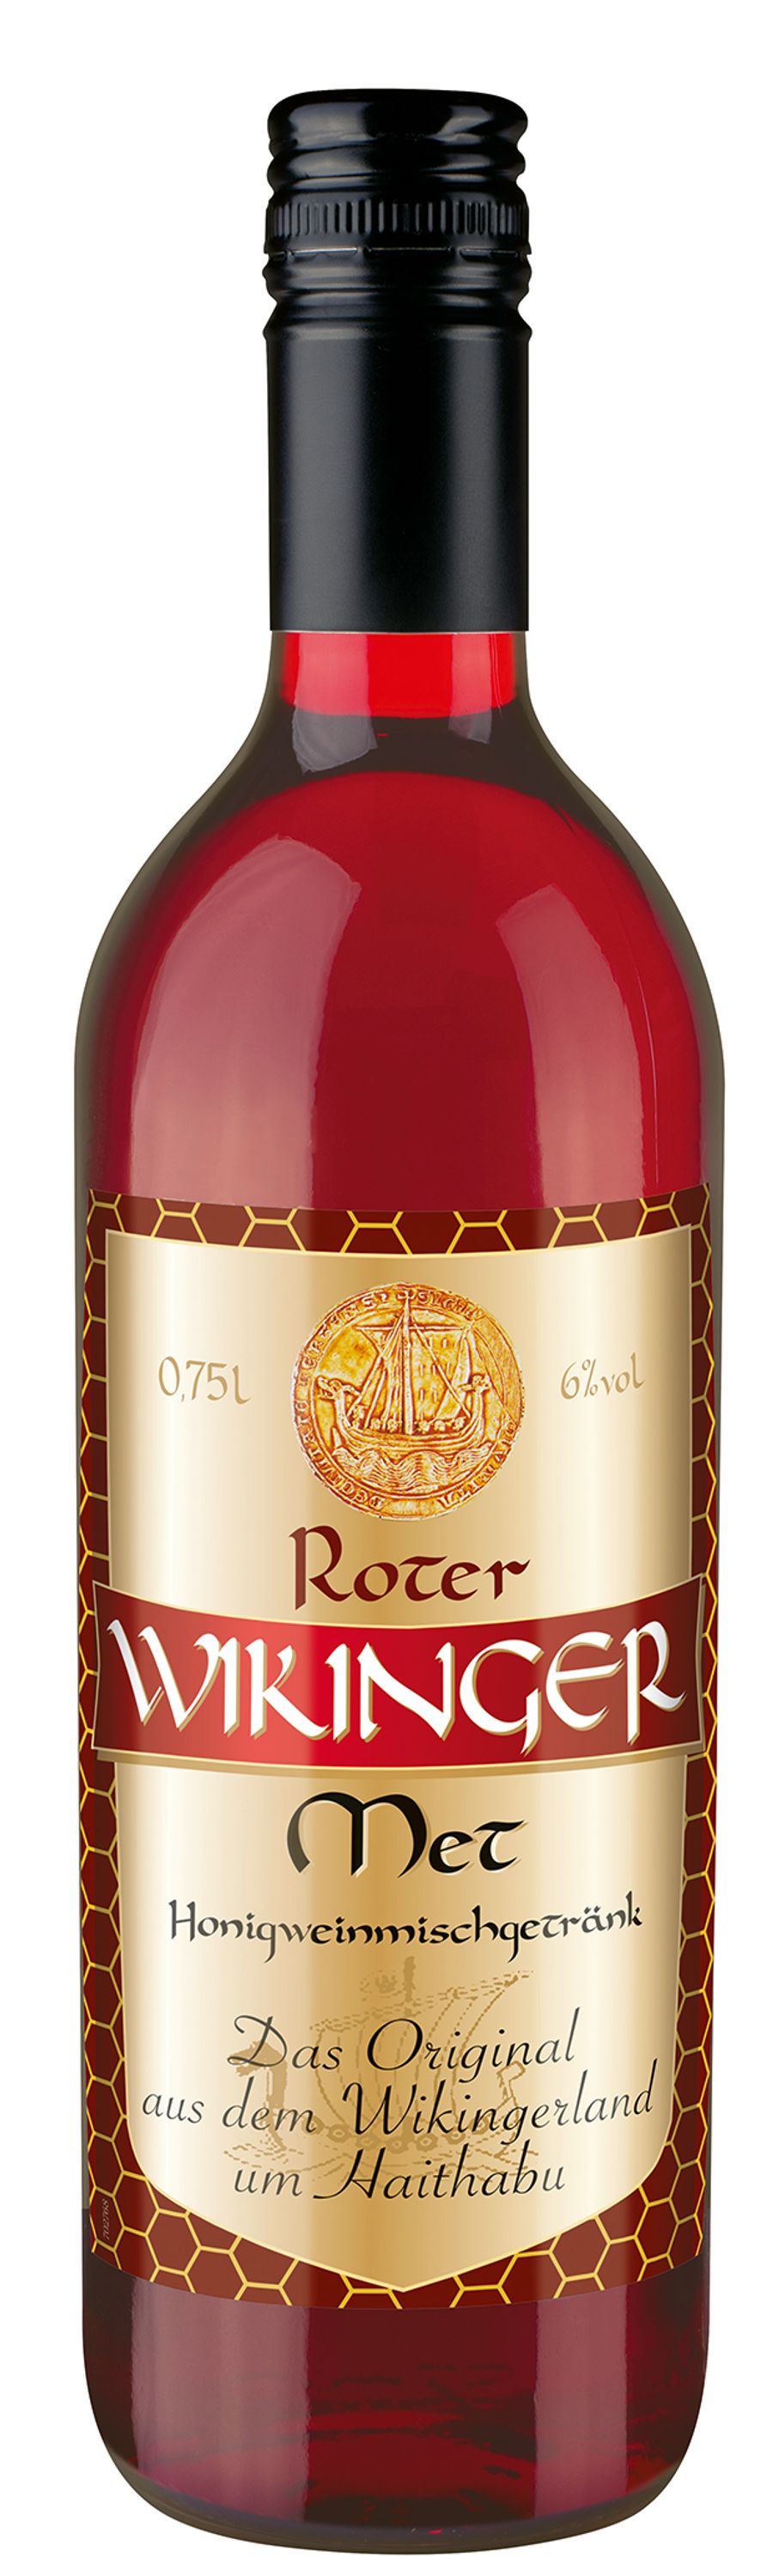 Wikinger Met Rot  0,75l, alc. 6 Vol.-%, Honig-Kirsch-Wein Deutschland